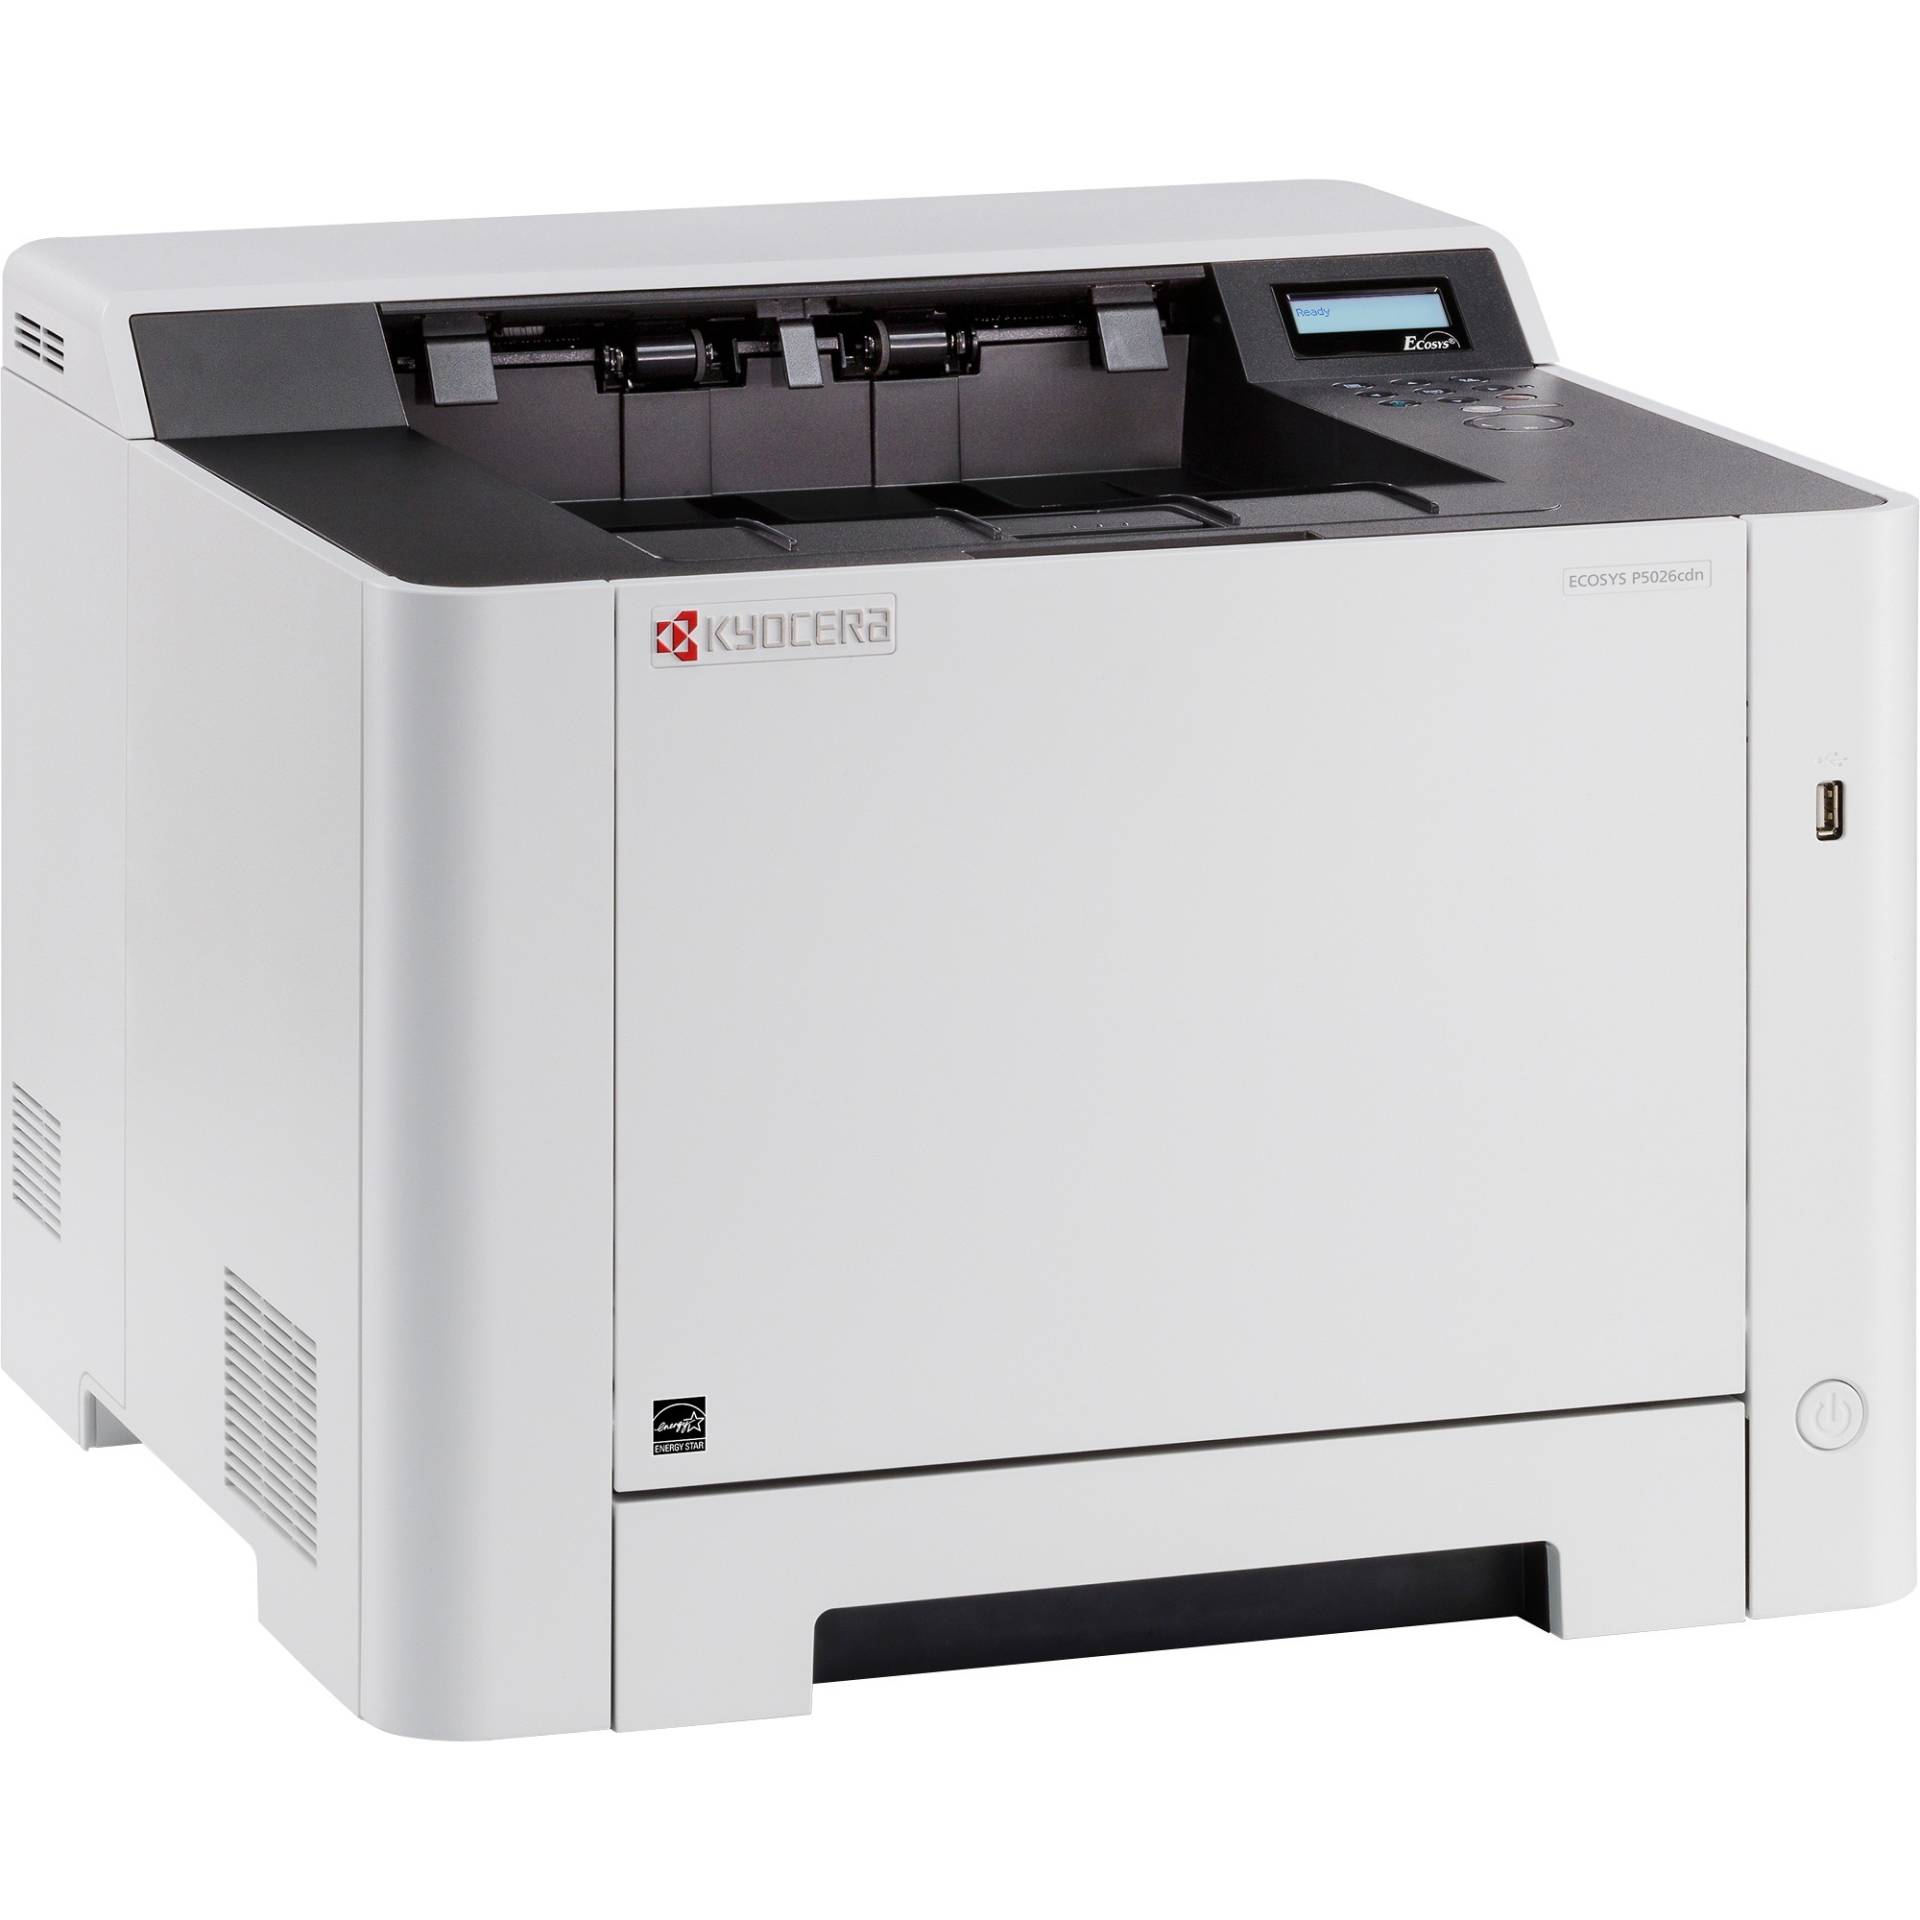 ECOSYS P5026cdn, Farblaserdrucker von Kyocera